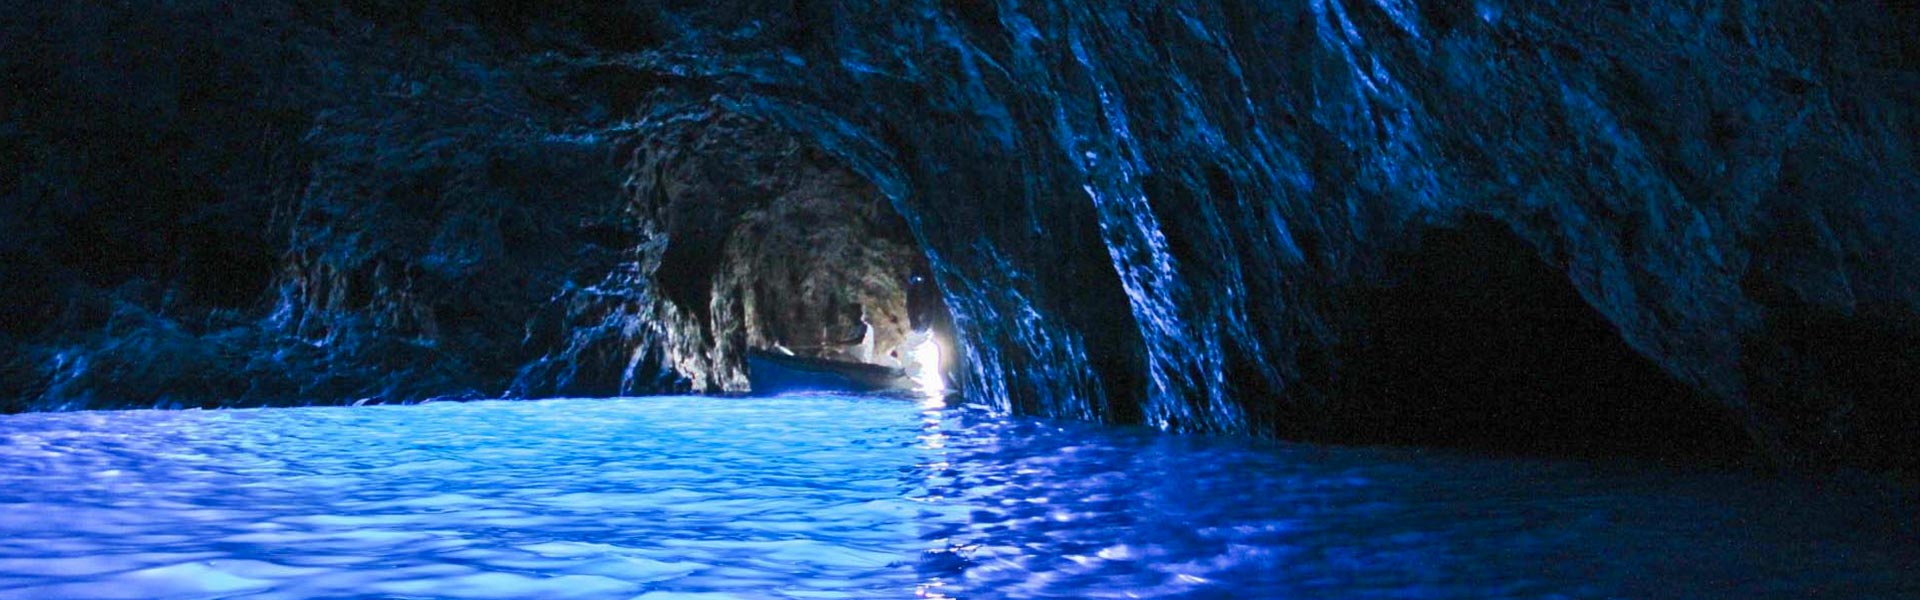 Boat Tour Capri & Blue Grotto